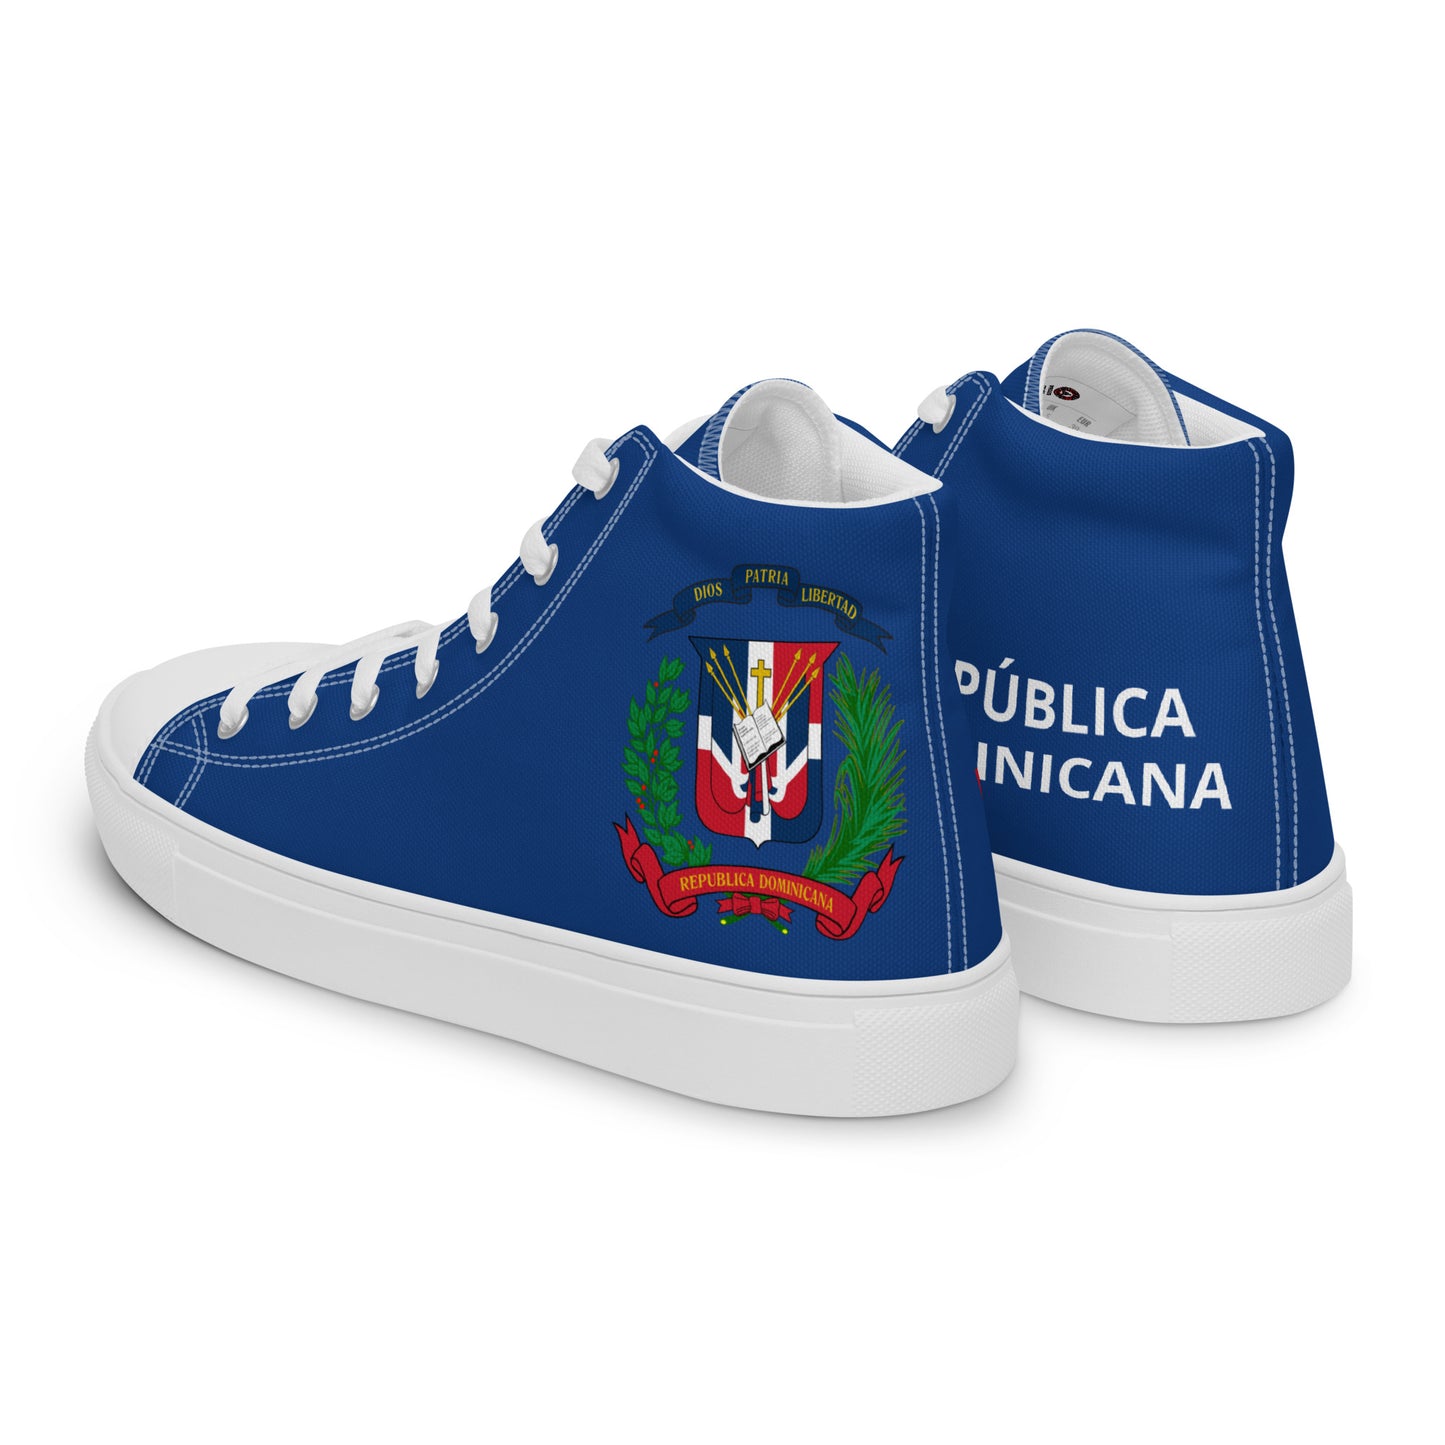 República Dominicana - Men - Blue - High top shoes